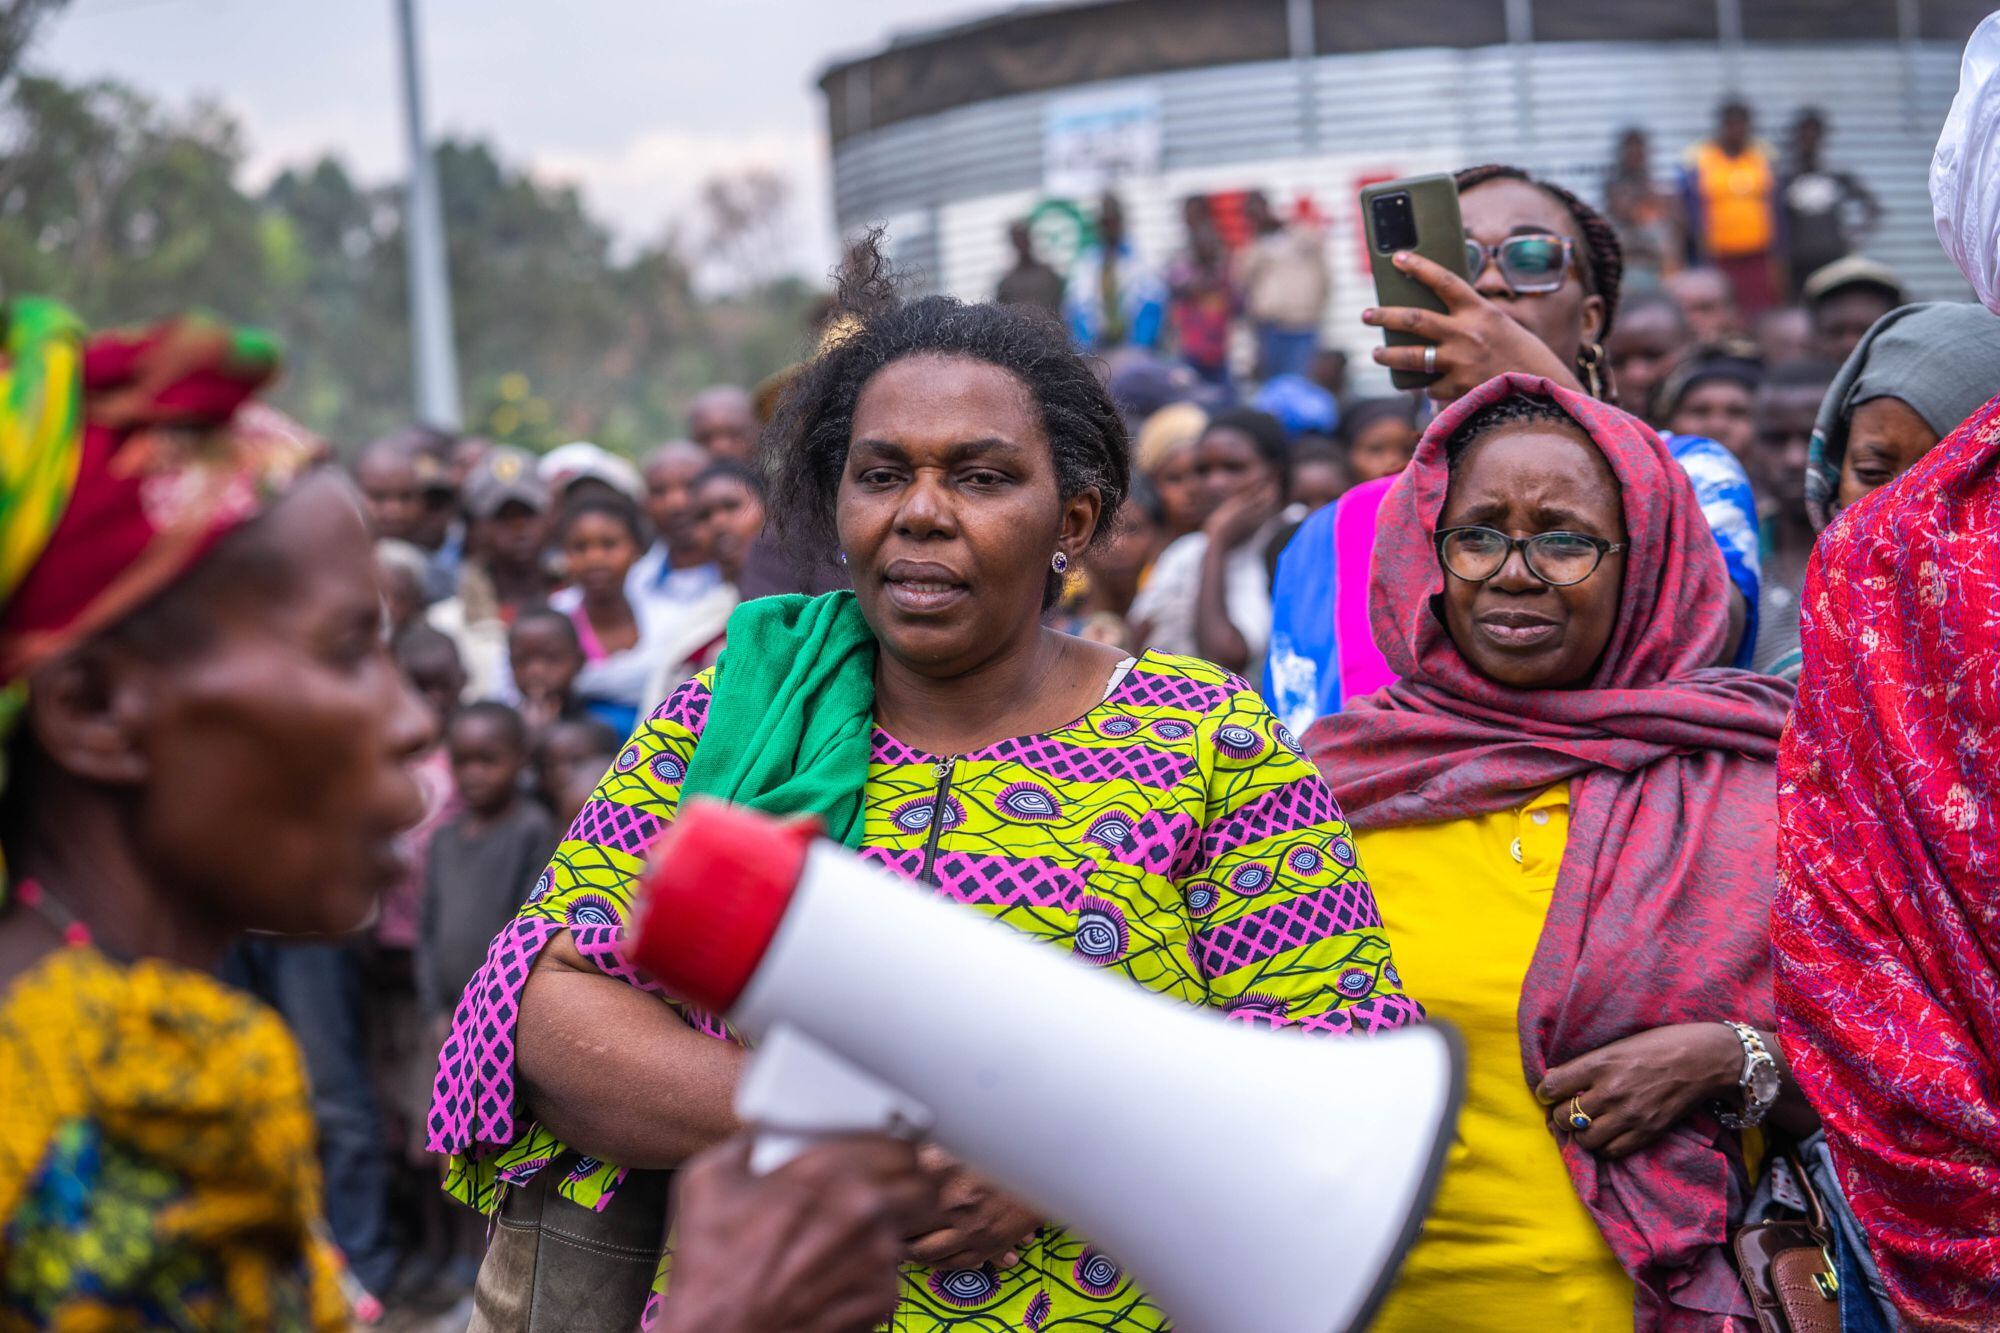 Josephine Malimukono, directora de la ONG Ligue pour la Solidarité Congolaise (Liga por la Solidaridad Congoleña), con un altavoz en la mano, en el campo de Kanyaruchinya, durante un acto de promoción de los derechos humanos y sensibilización ante la violencia de género.